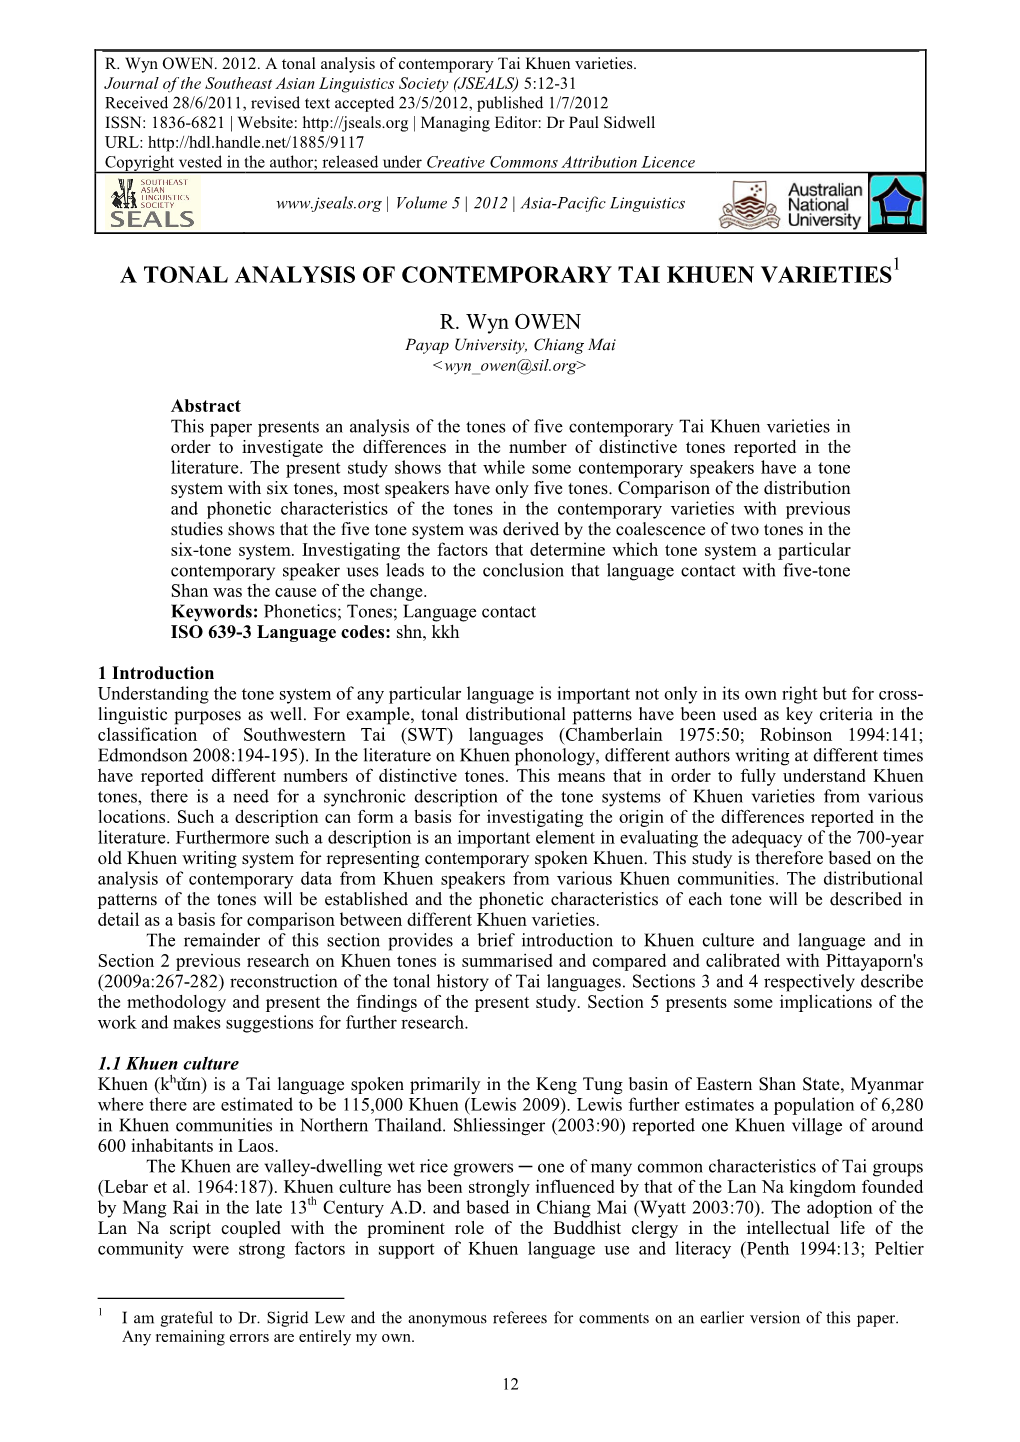 A Tonal Analysis of Contemporary Tai Khuen Varieties